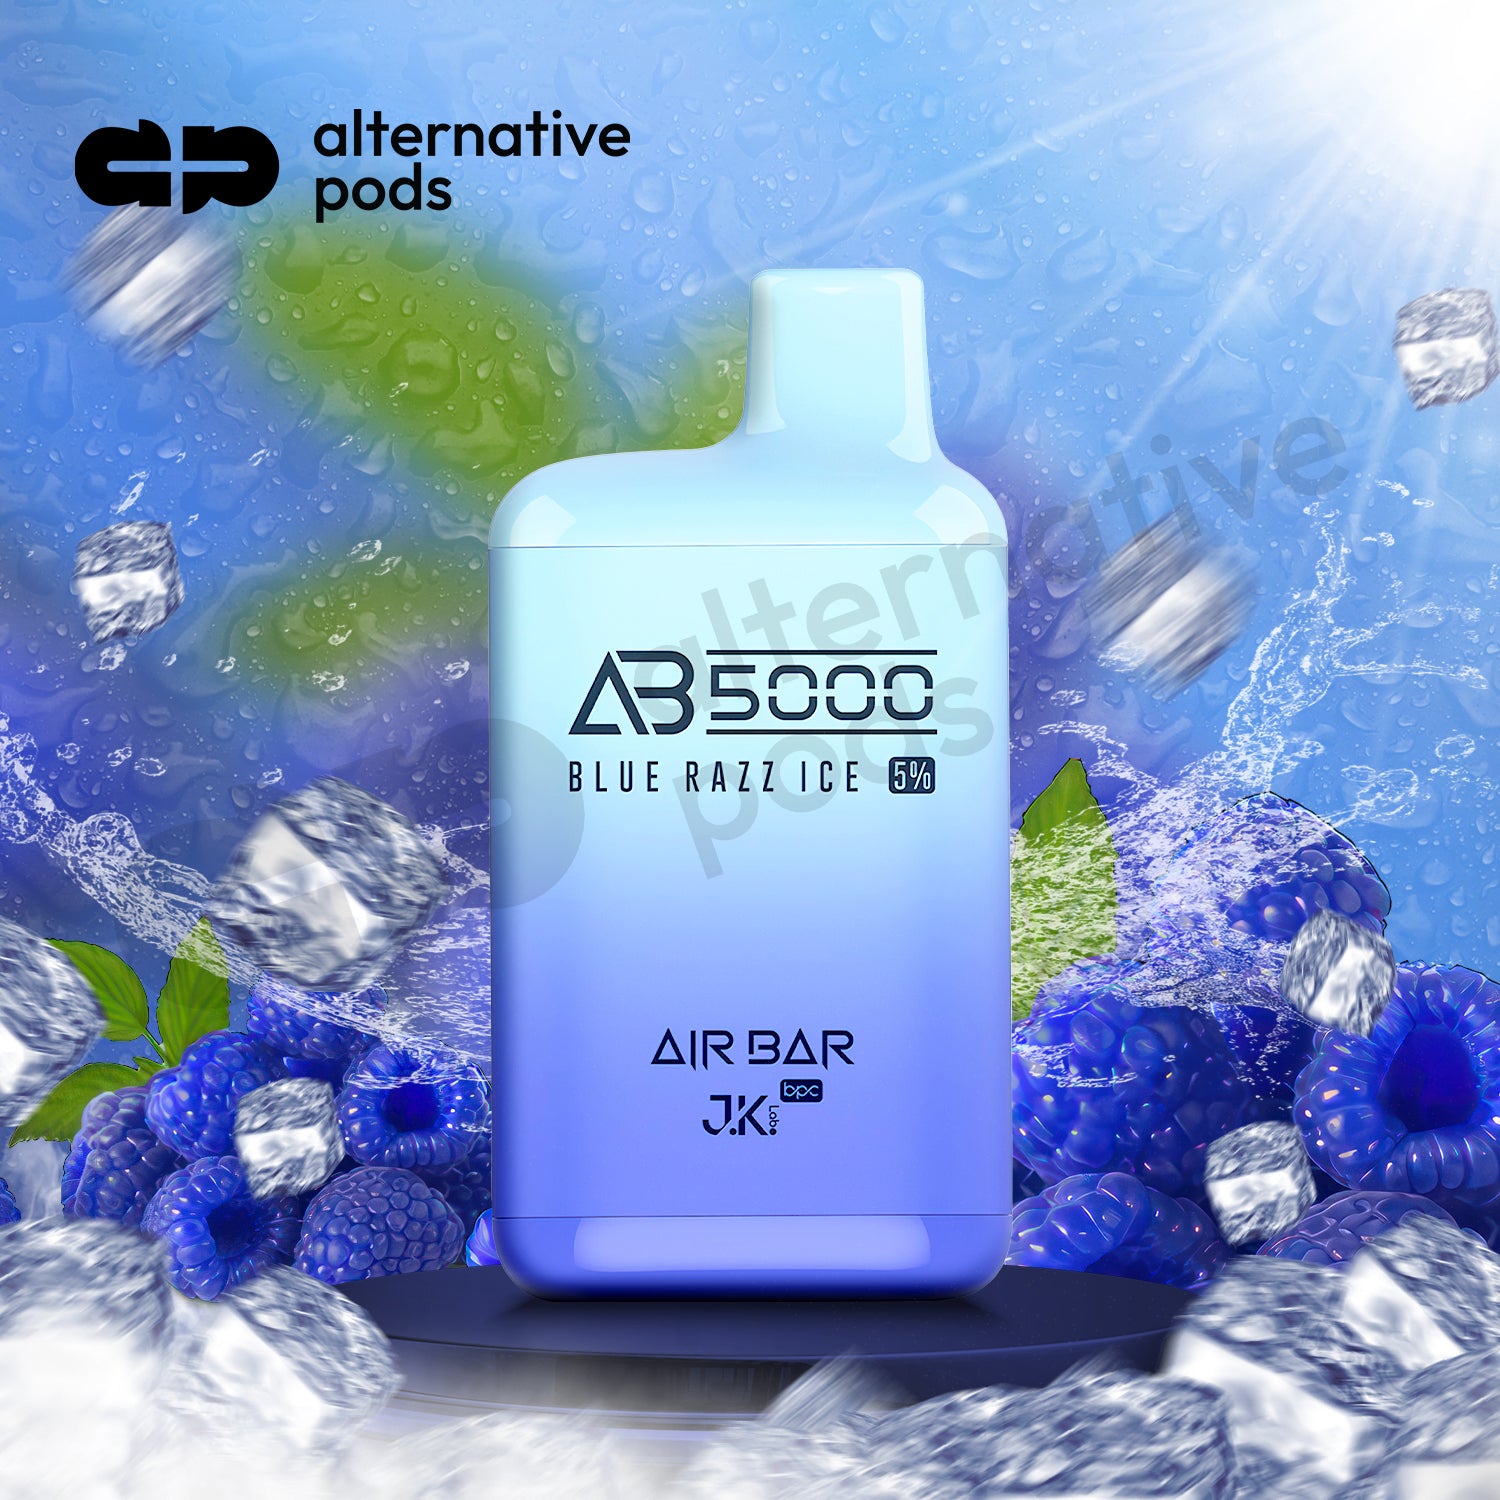 Air Bar AB5000 Disposable-BLUE RAZZ ICE